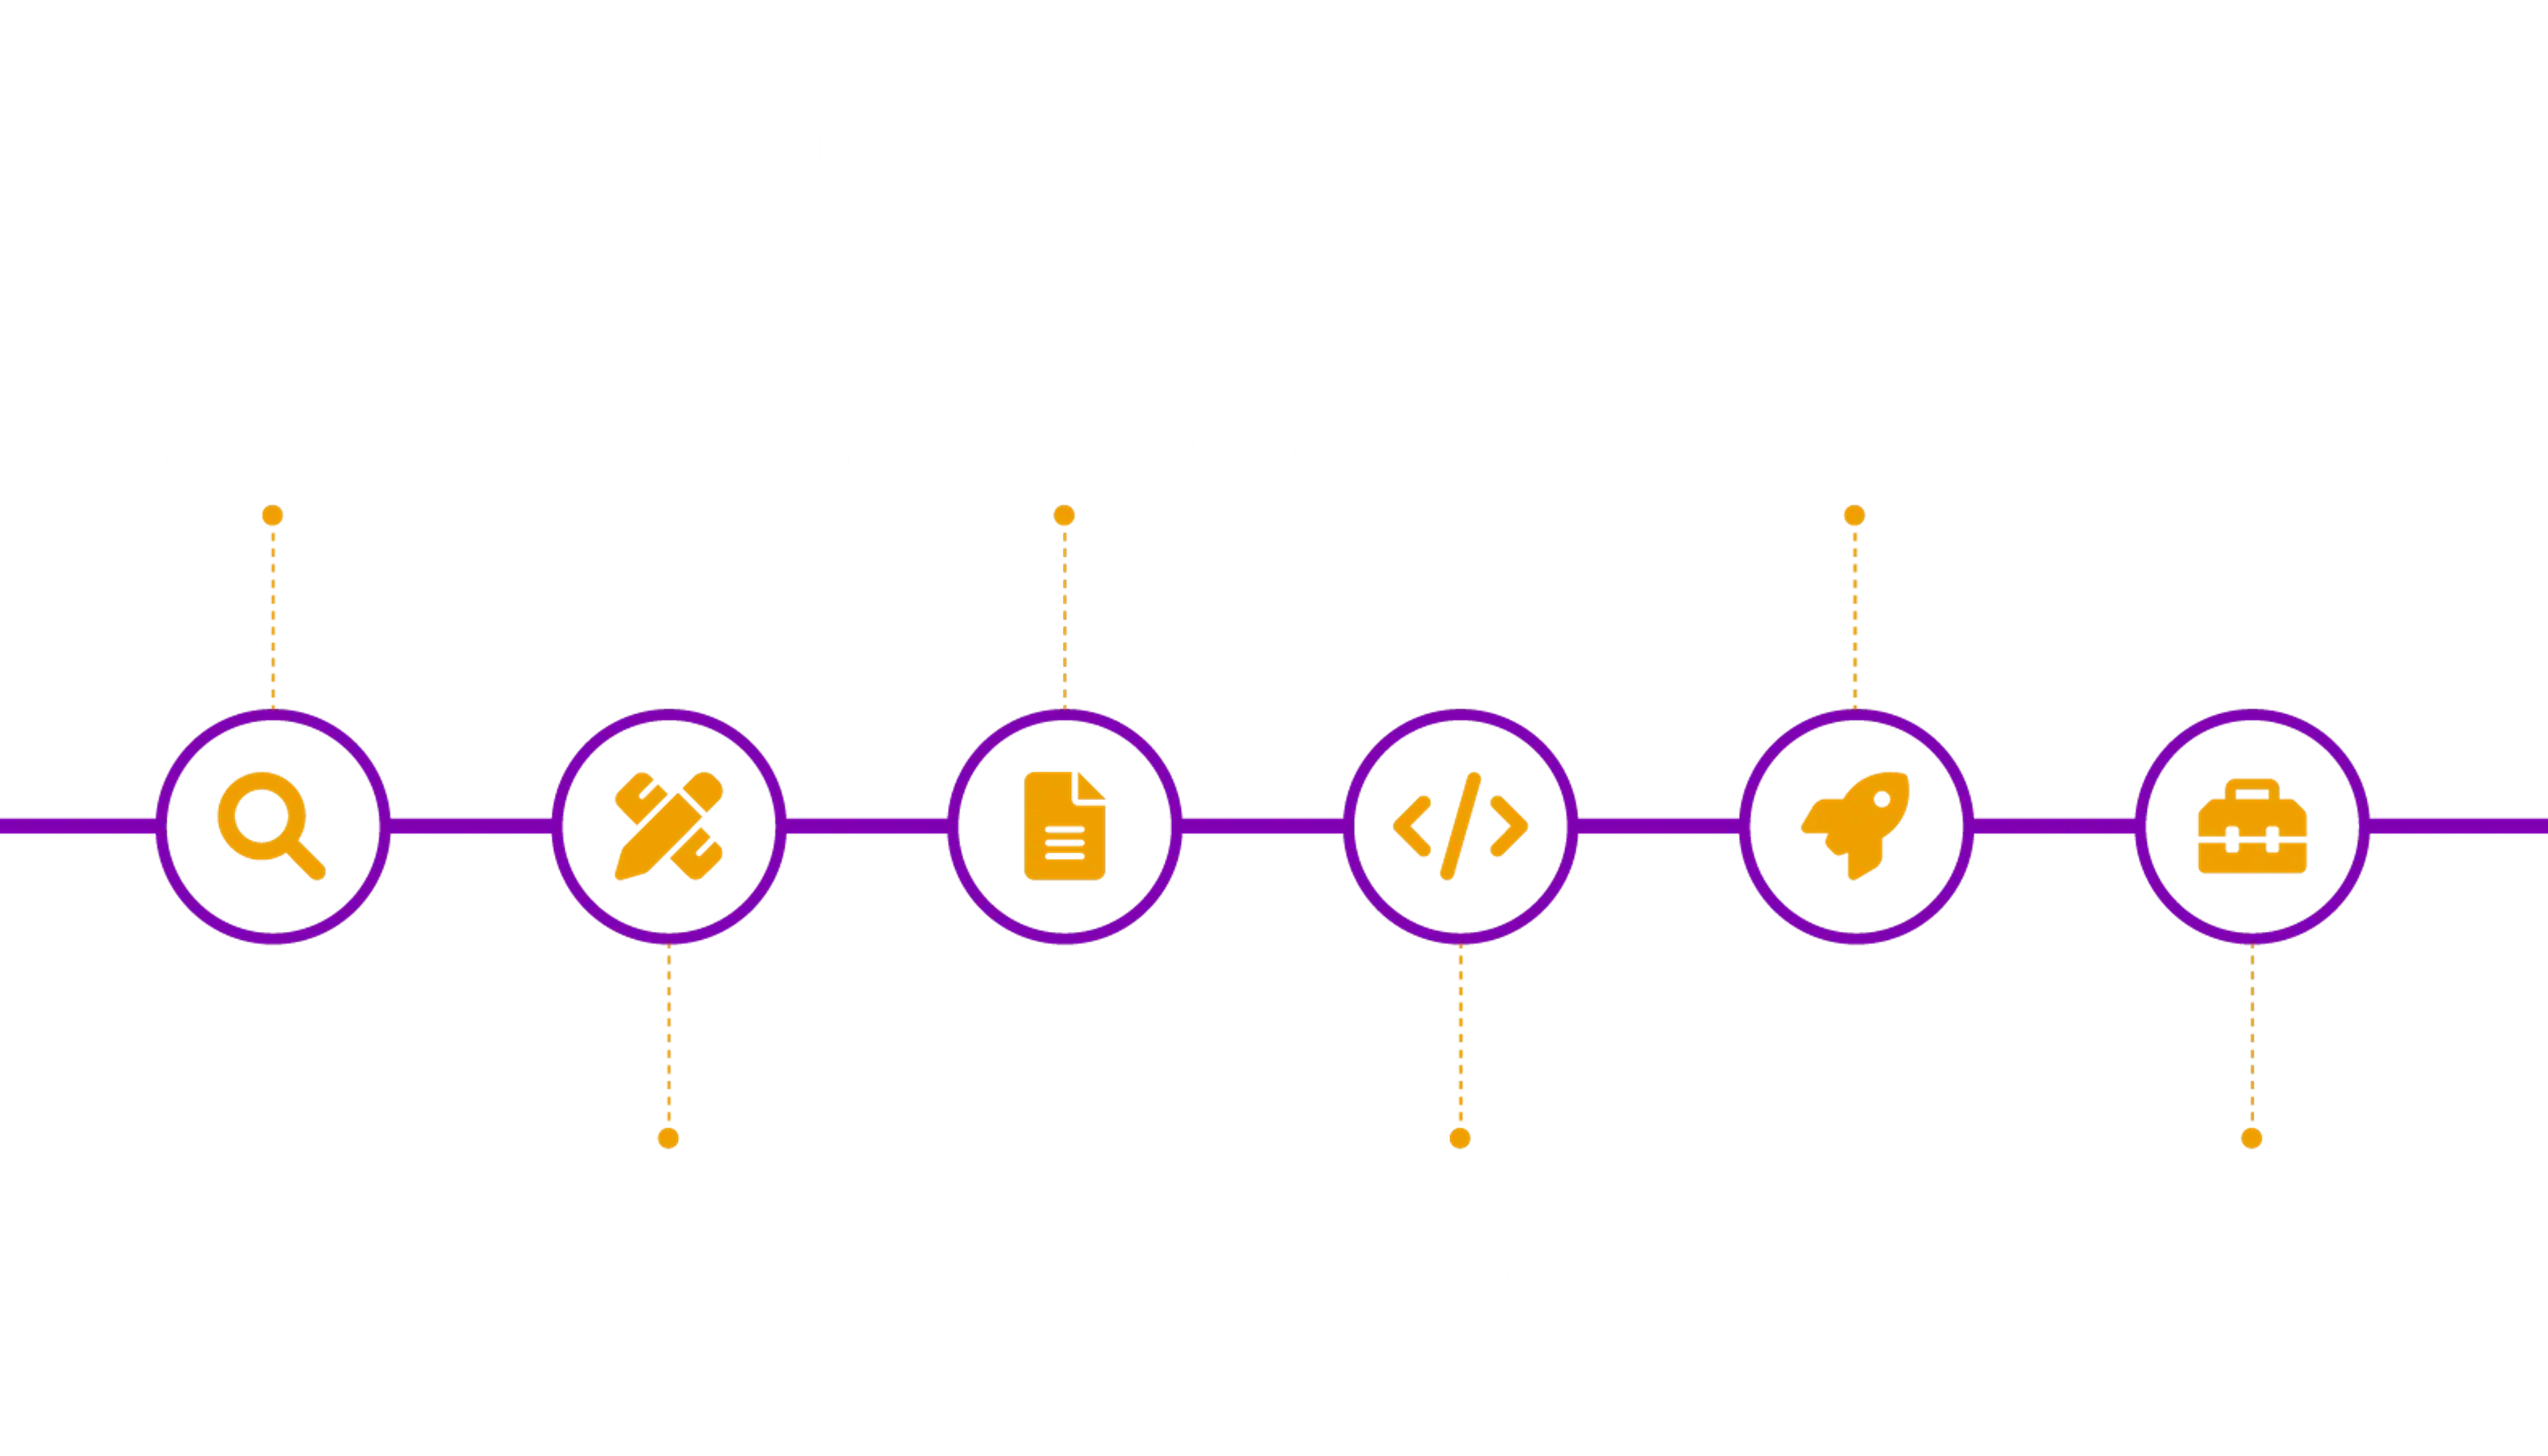 Seks trinn i utvikling av nettsider: 1: planlegging og behovsavklaring, 2: design, 3: innholdsproduksjon, 4: koding, utvikling og testing, 5: lansering, 6: vedlikeholde og kontinuerlige forbedringer